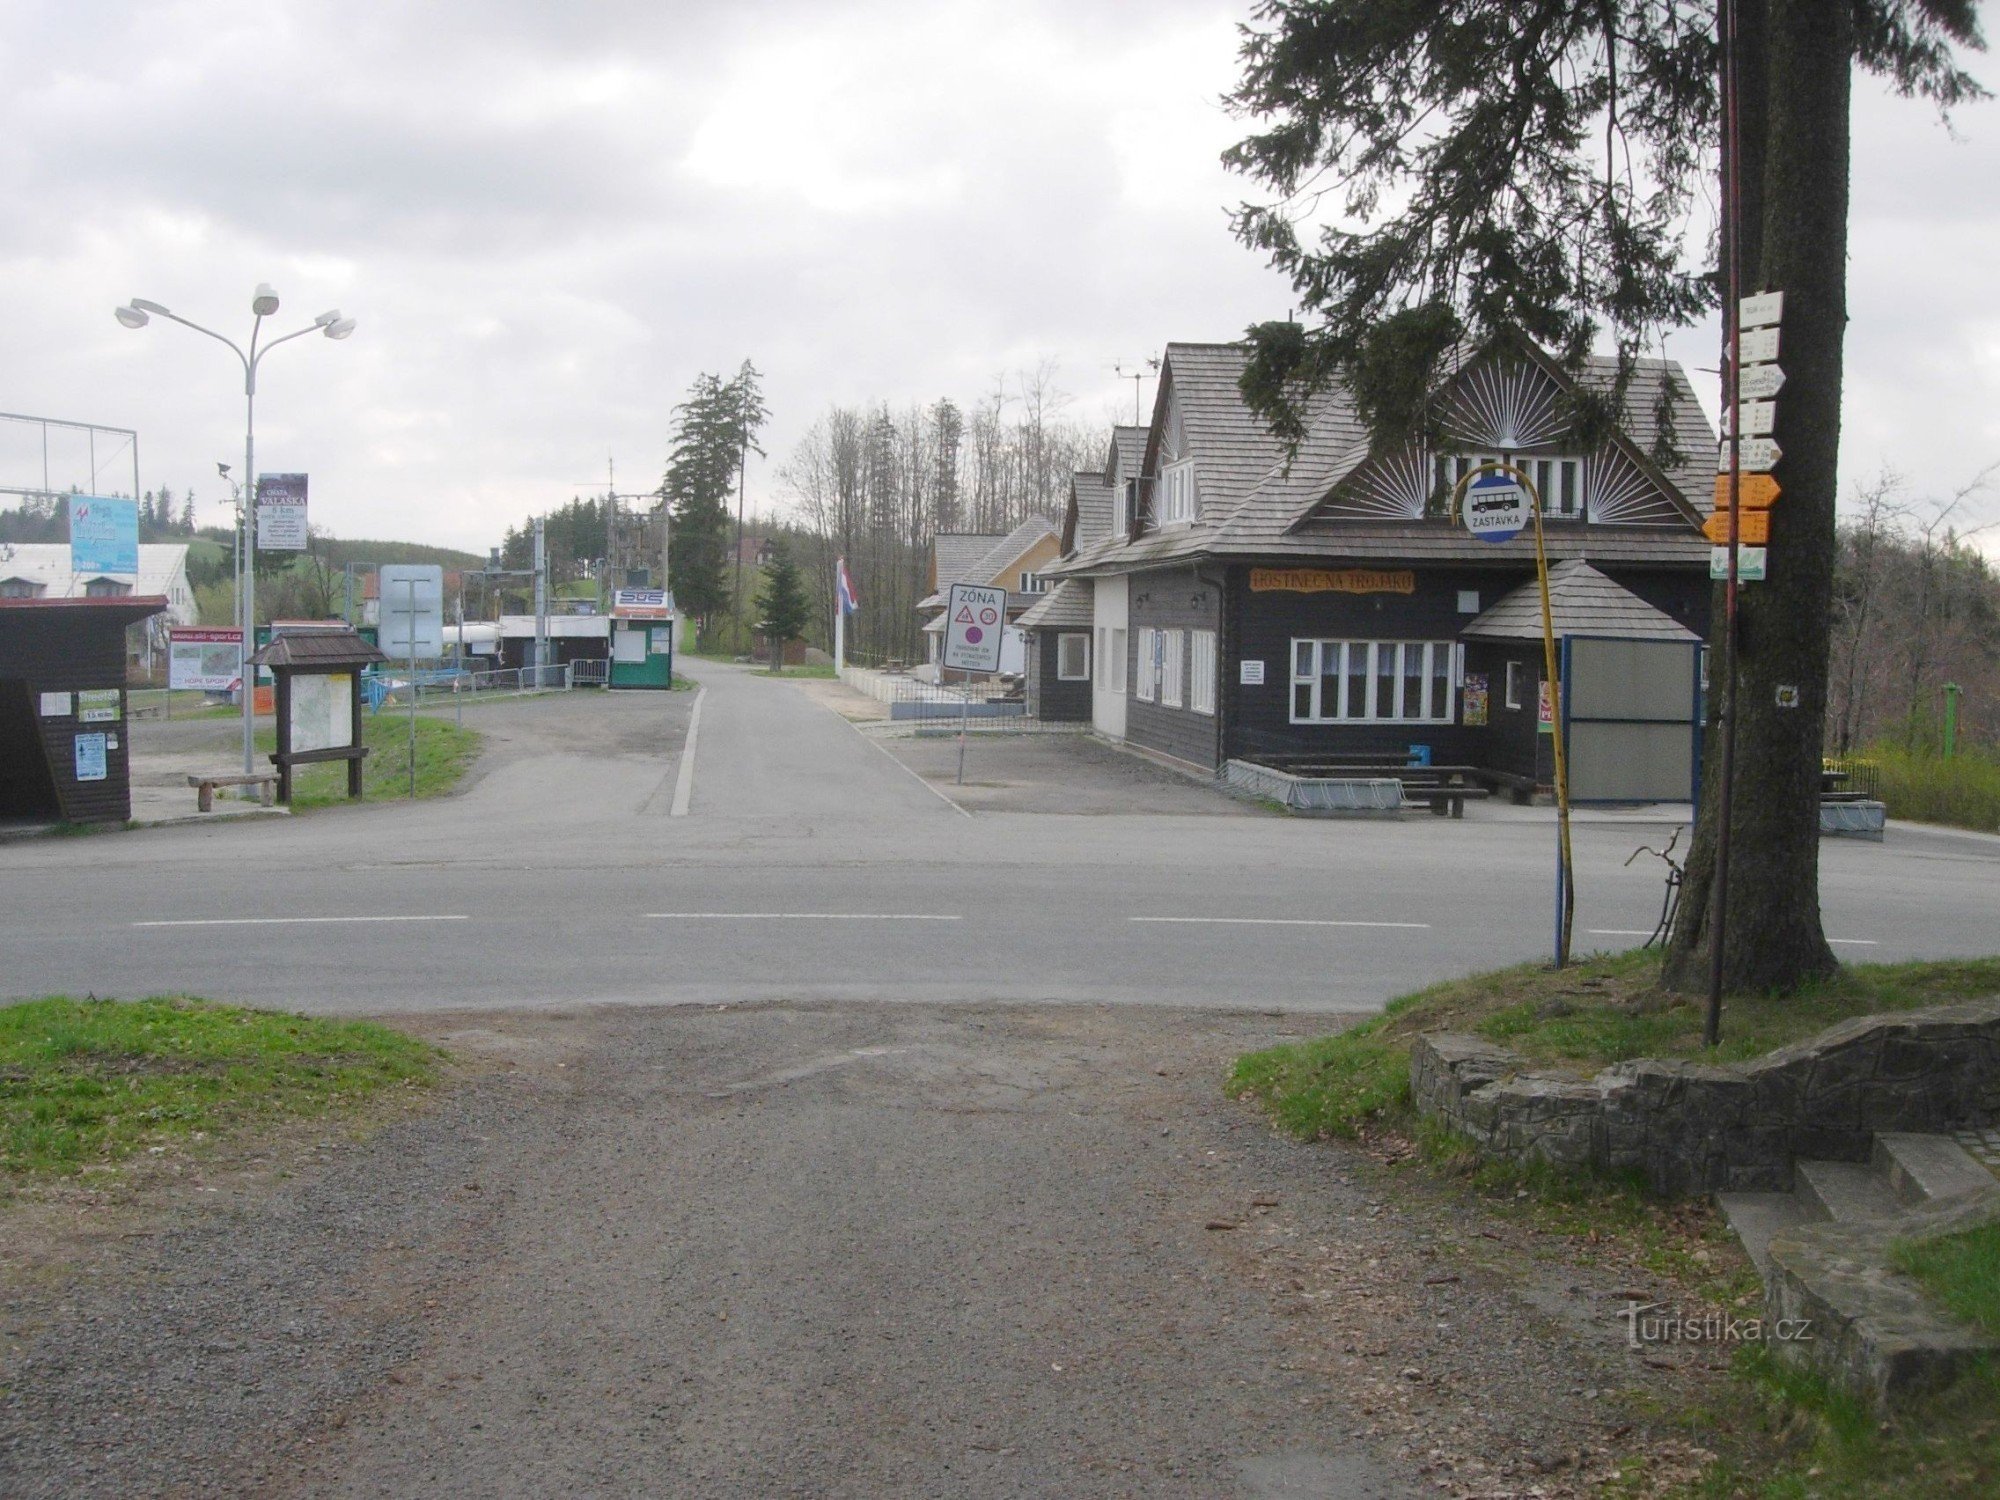 Un carrefour à trois voies avec une auberge, un arrêt de bus, une station de ski et un panneau indicateur